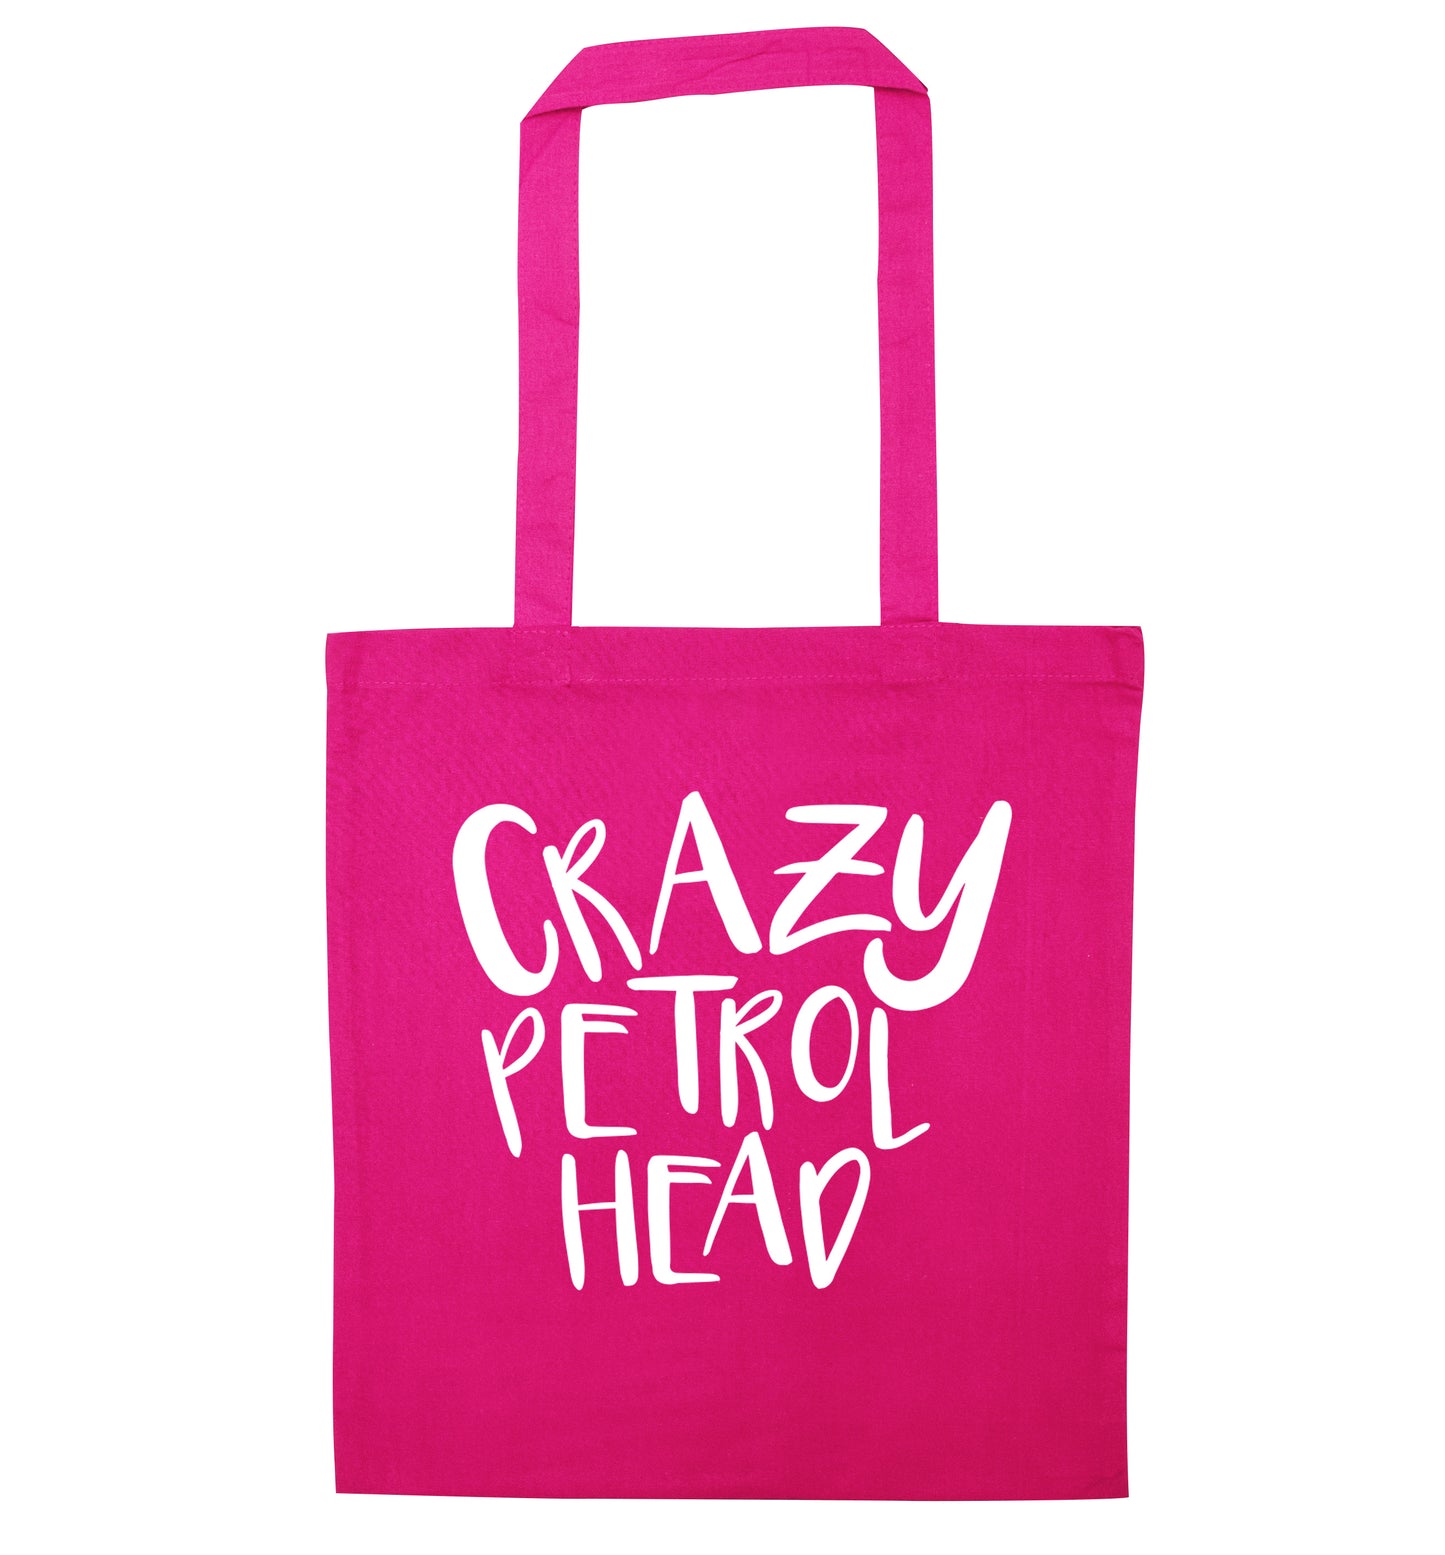 Crazy petrol head pink tote bag